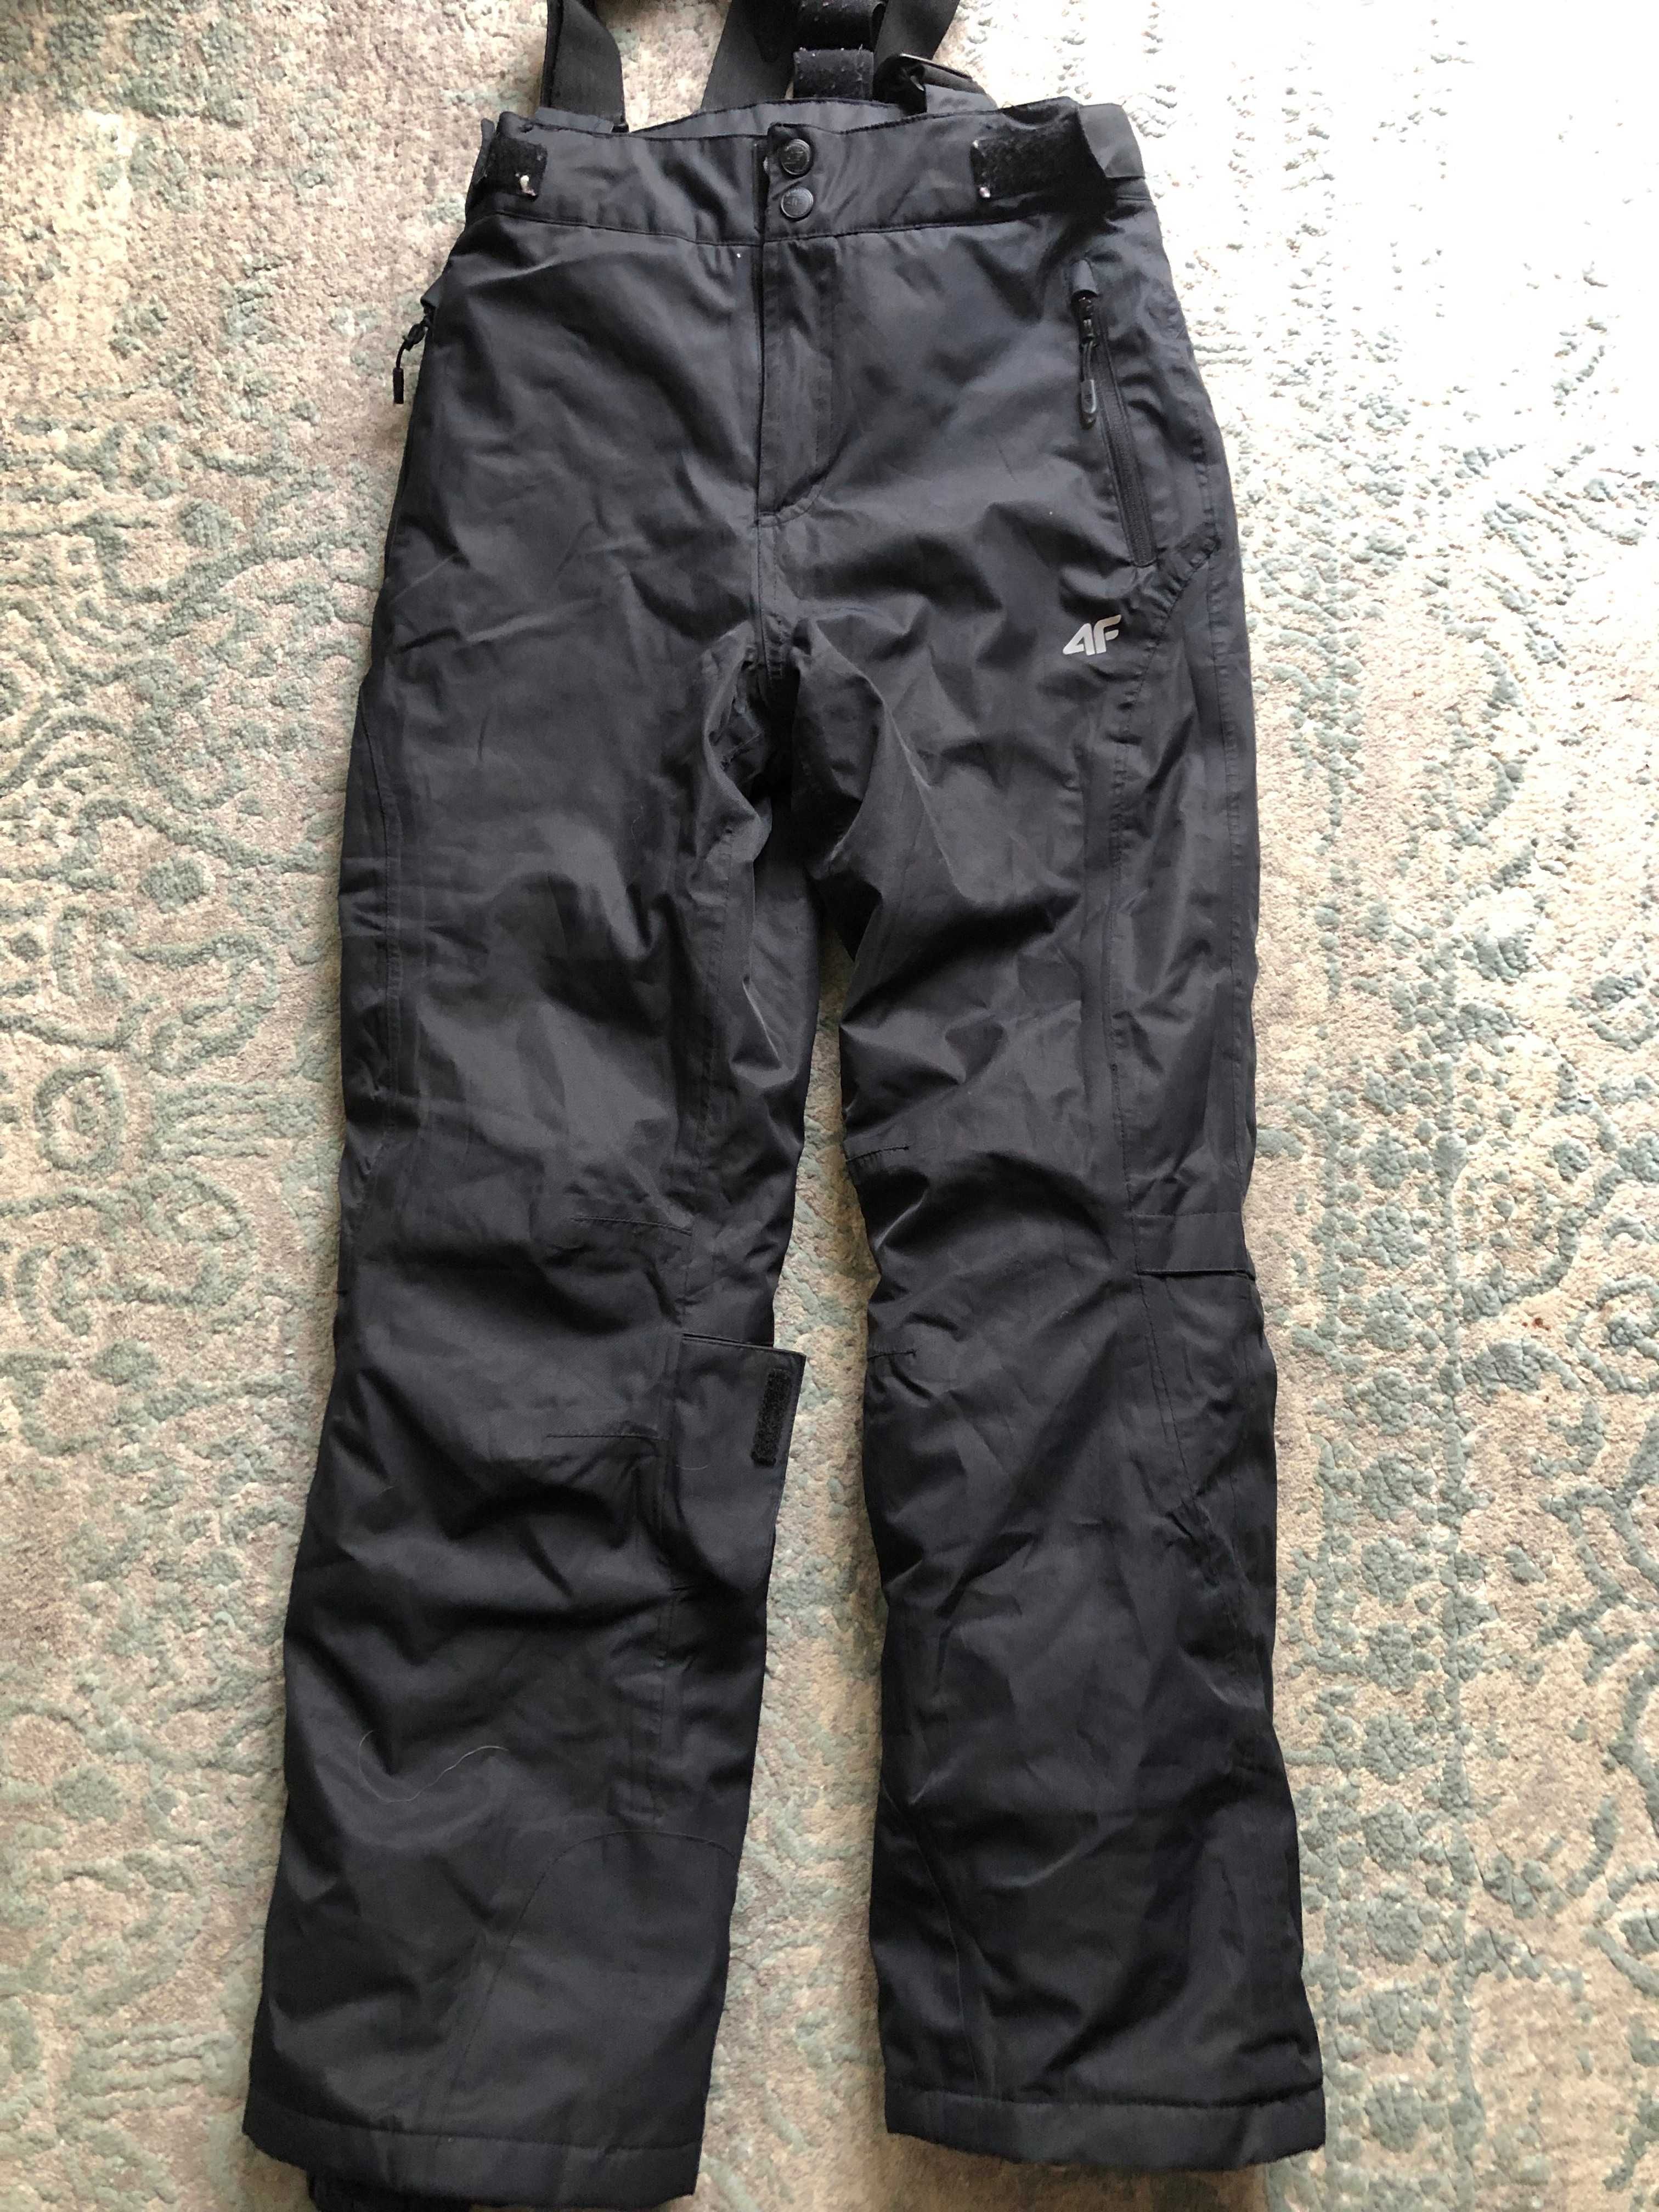 Spodnie Narciarskie, czarne, firmy 4F - rozmiar: 146